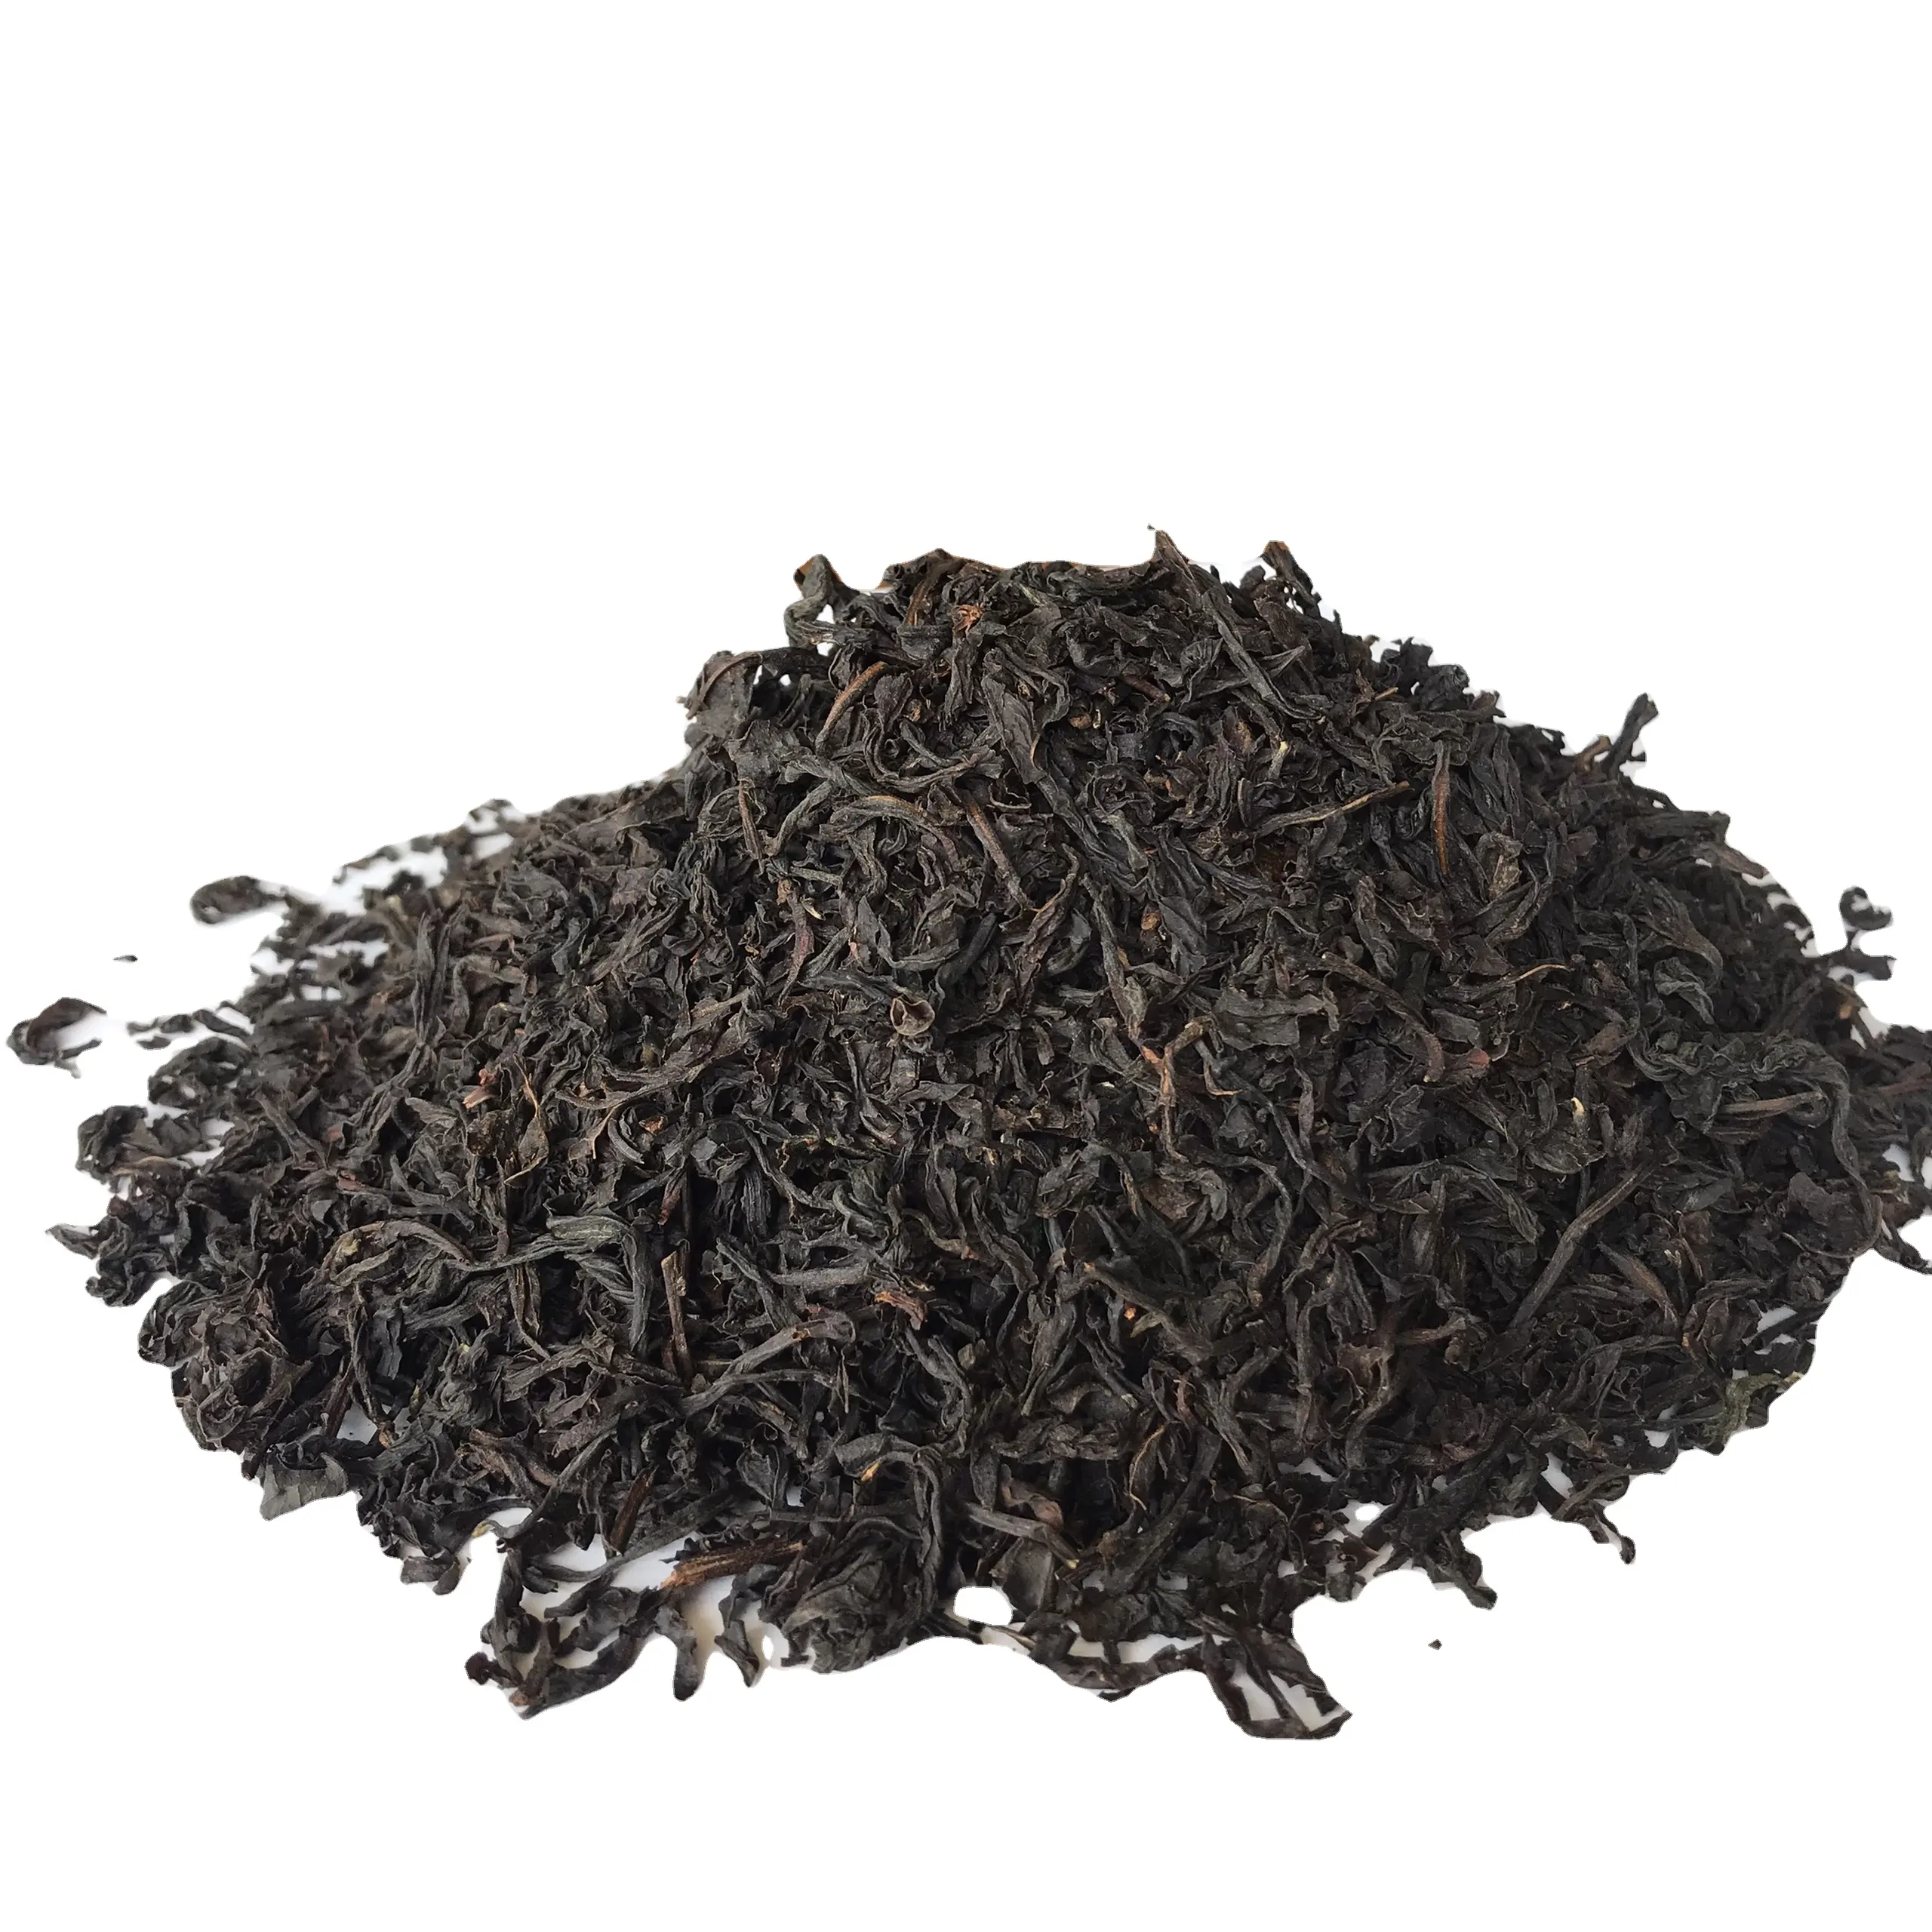 वियतनामी शुद्ध काली चाय अच्छी गुणवत्ता ठीक है और सुगंधित फैक्टरी की आपूर्ति सबसे अच्छी गुणवत्ता तत्काल काले ते